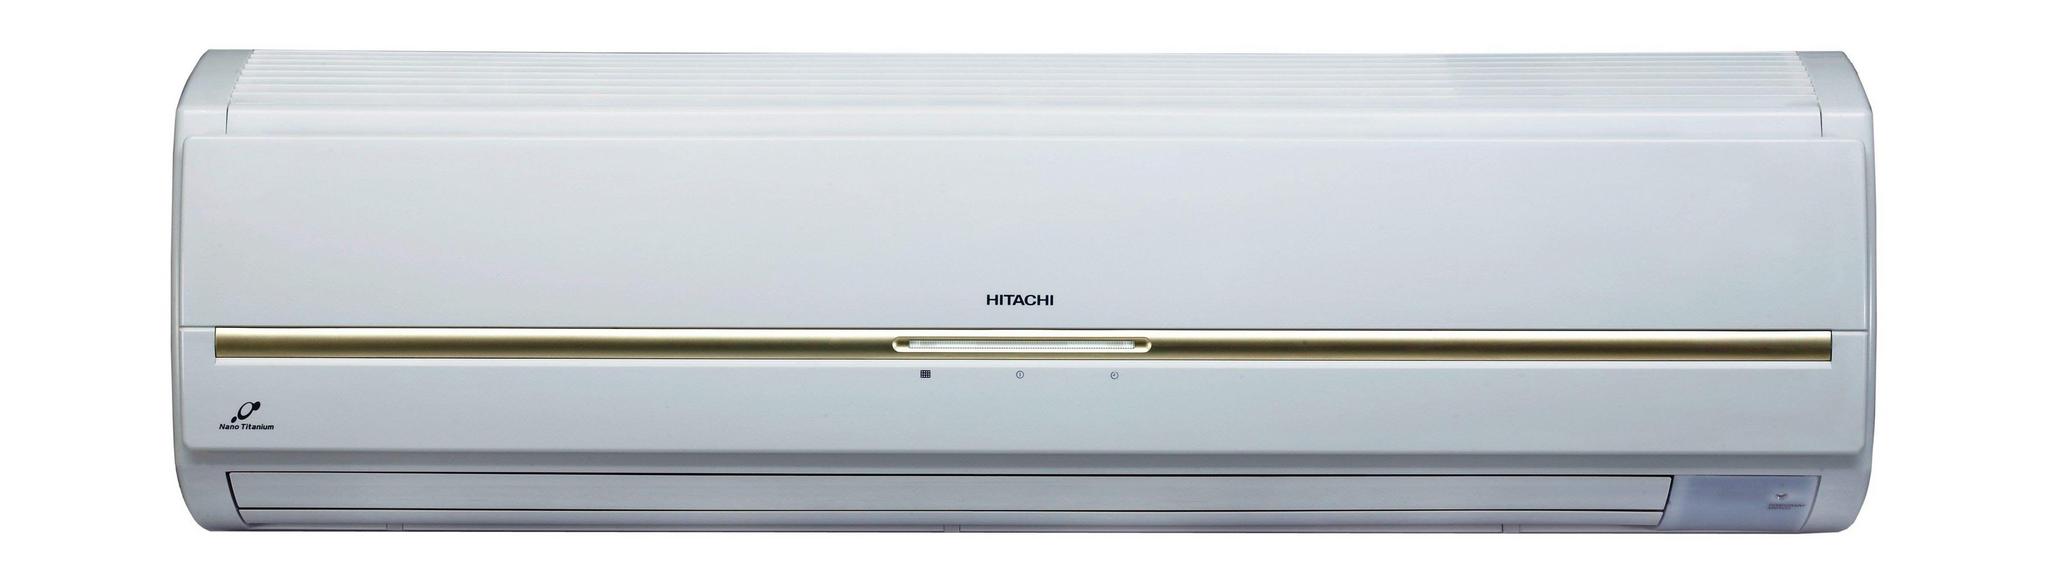 Hitachi 30000 BTU Split AC (RAC-S30CPZ)